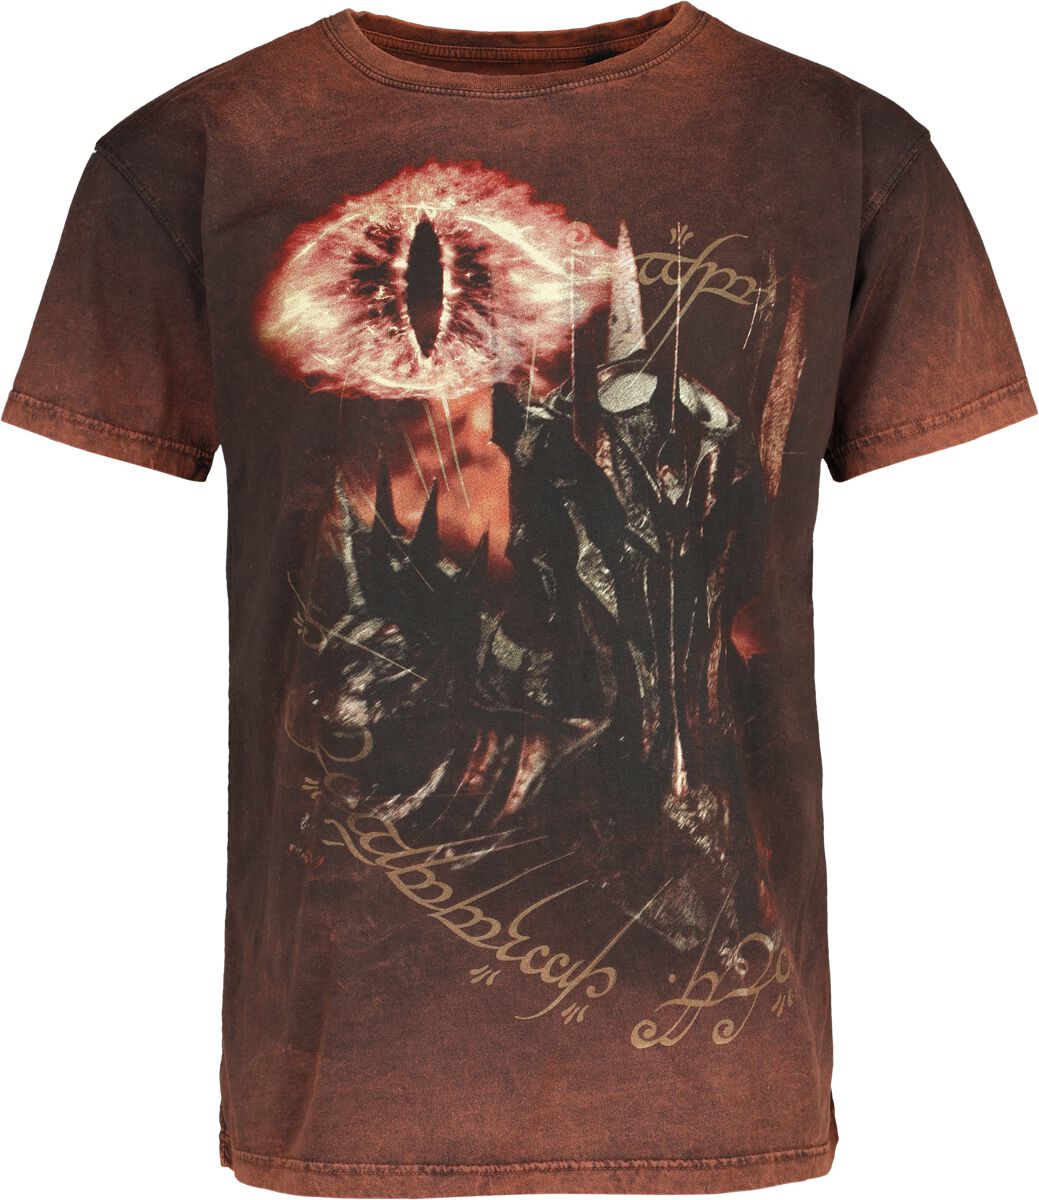 Der Herr der Ringe T-Shirt - Sauron - Eye Of Fire - S bis XXL - für Männer - Größe XL - multicolor  - EMP exklusives Merchandise!